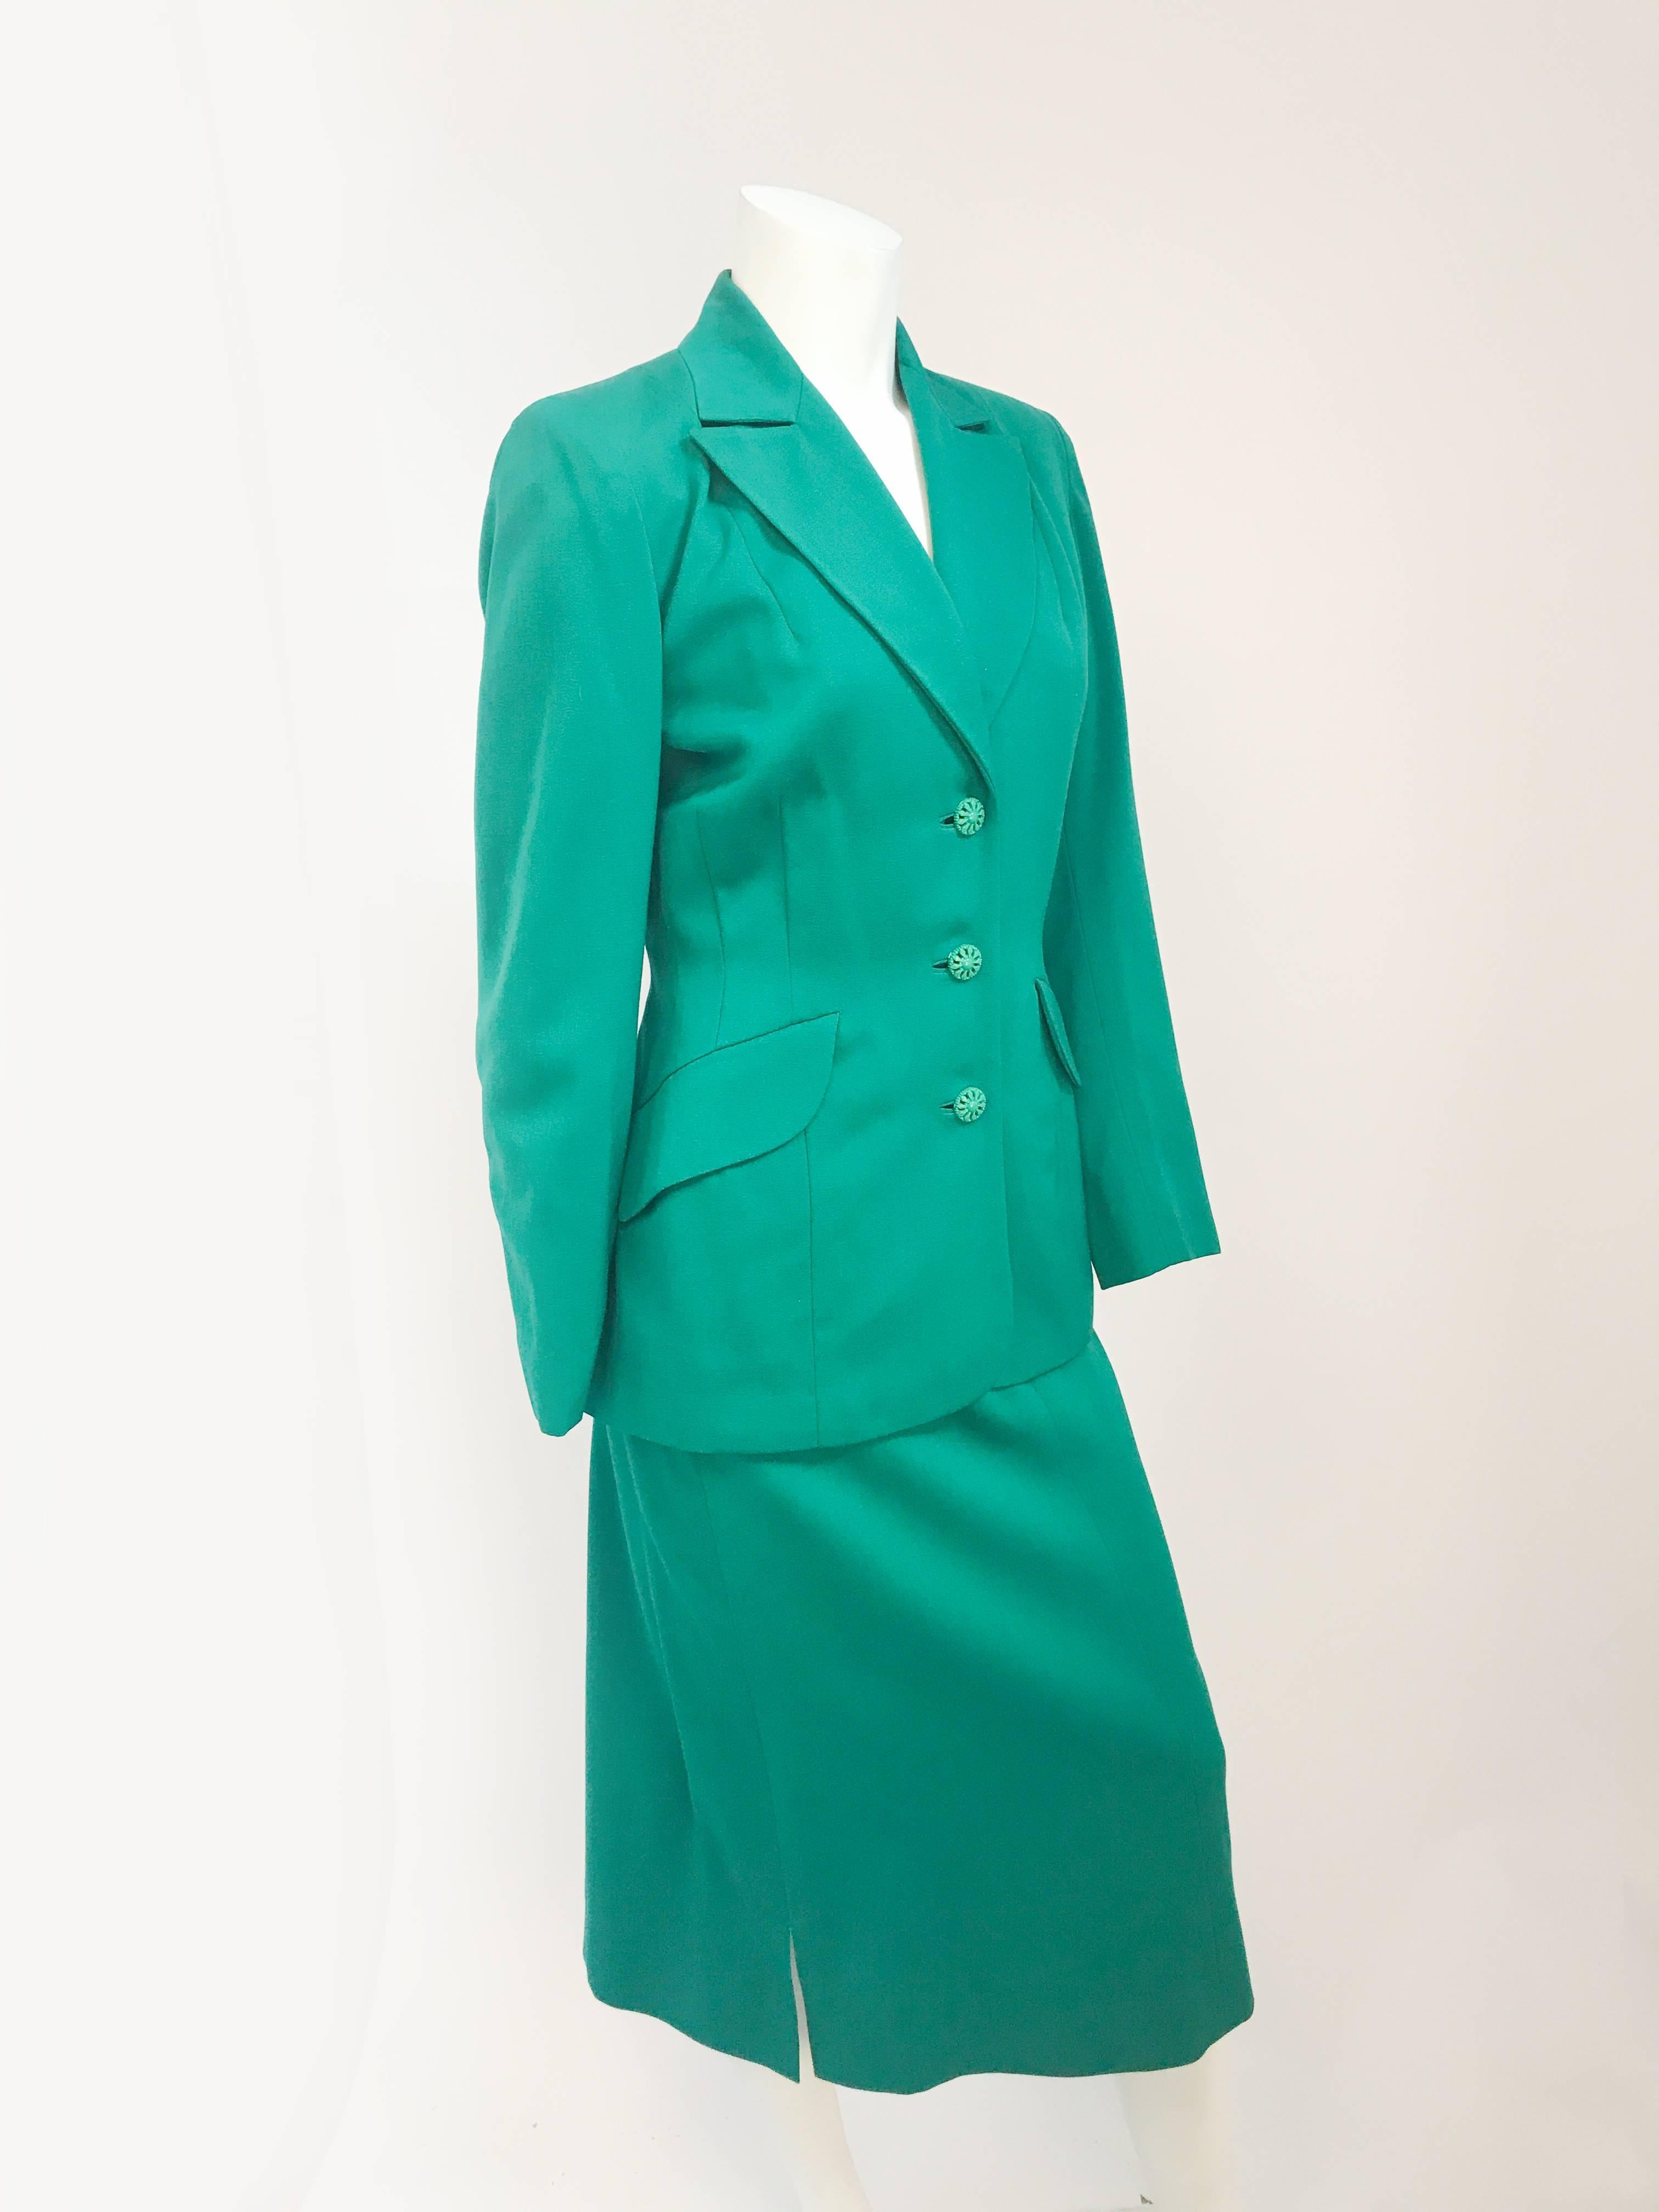 ensemble de costumes vert kelly des années 1940. Ensemble de costume vert kelly avec un large revers, des épaules rembourrées et des fermetures à boutons et à glissière. 